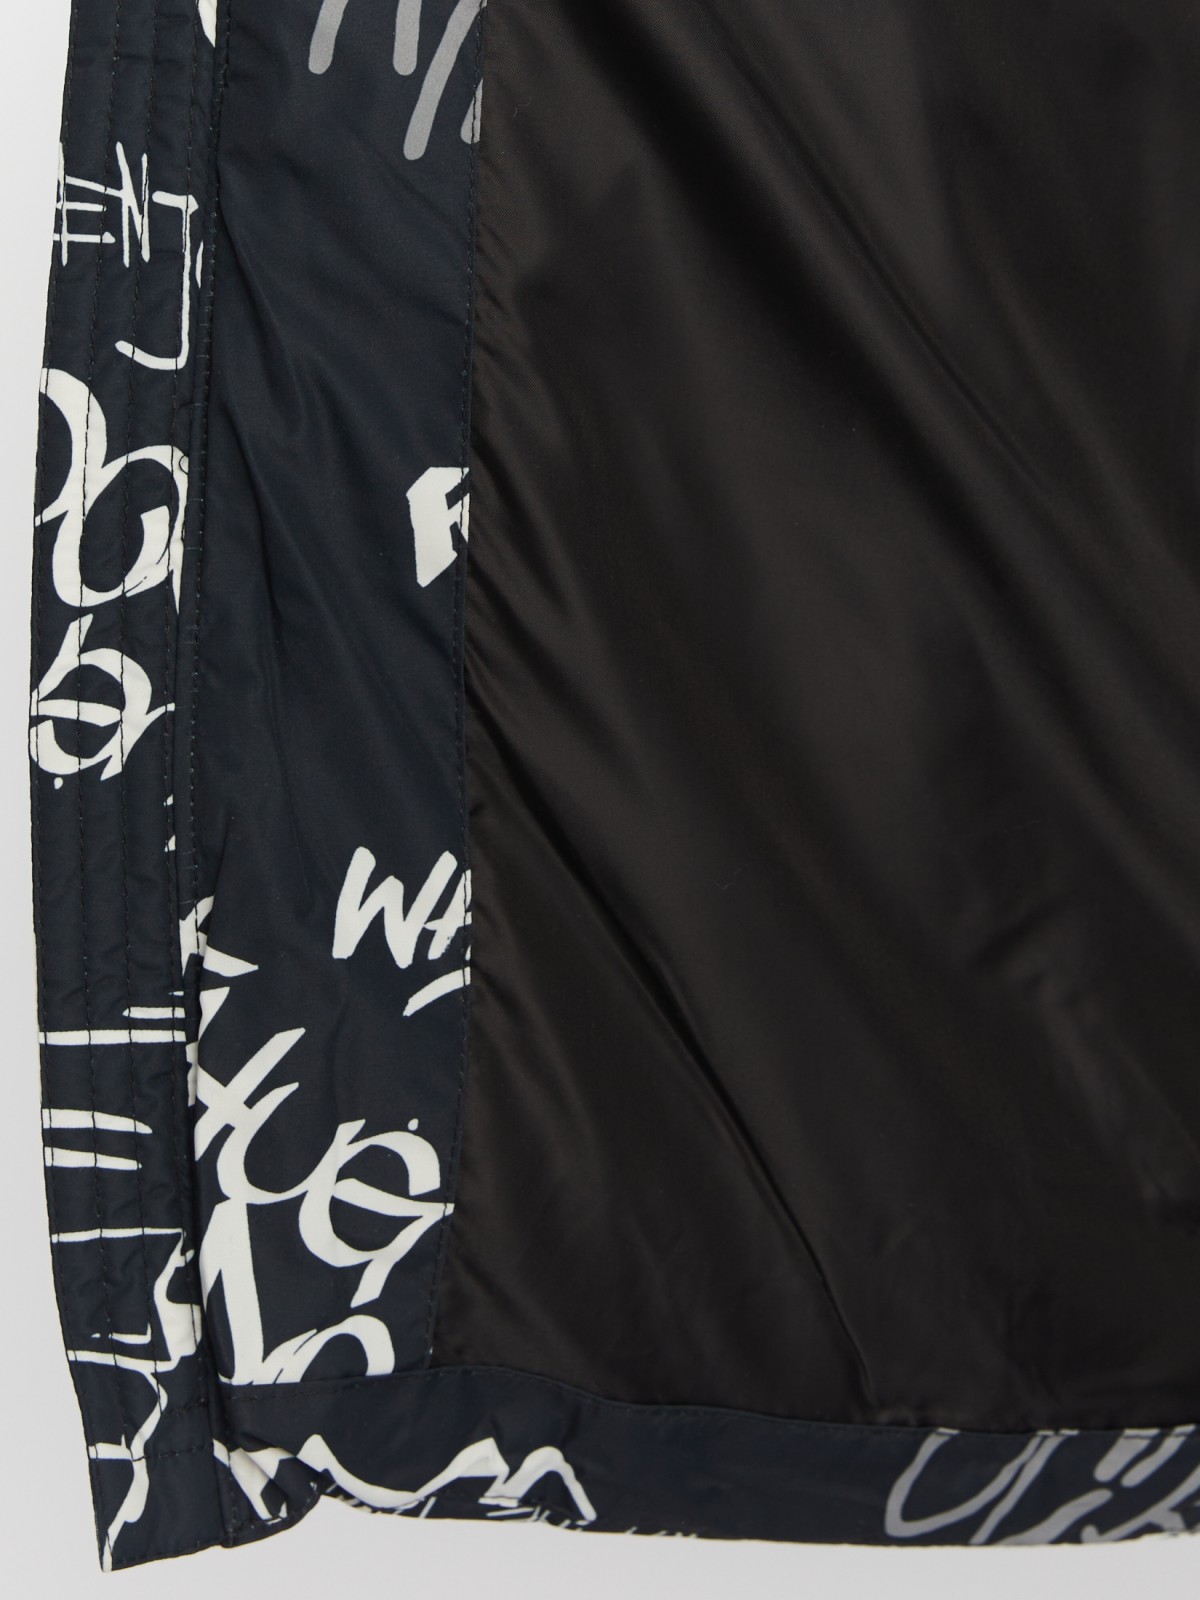 Тёплая стёганая куртка с капюшоном и акцентным принтом zolla 013425114054, цвет черный, размер M - фото 6